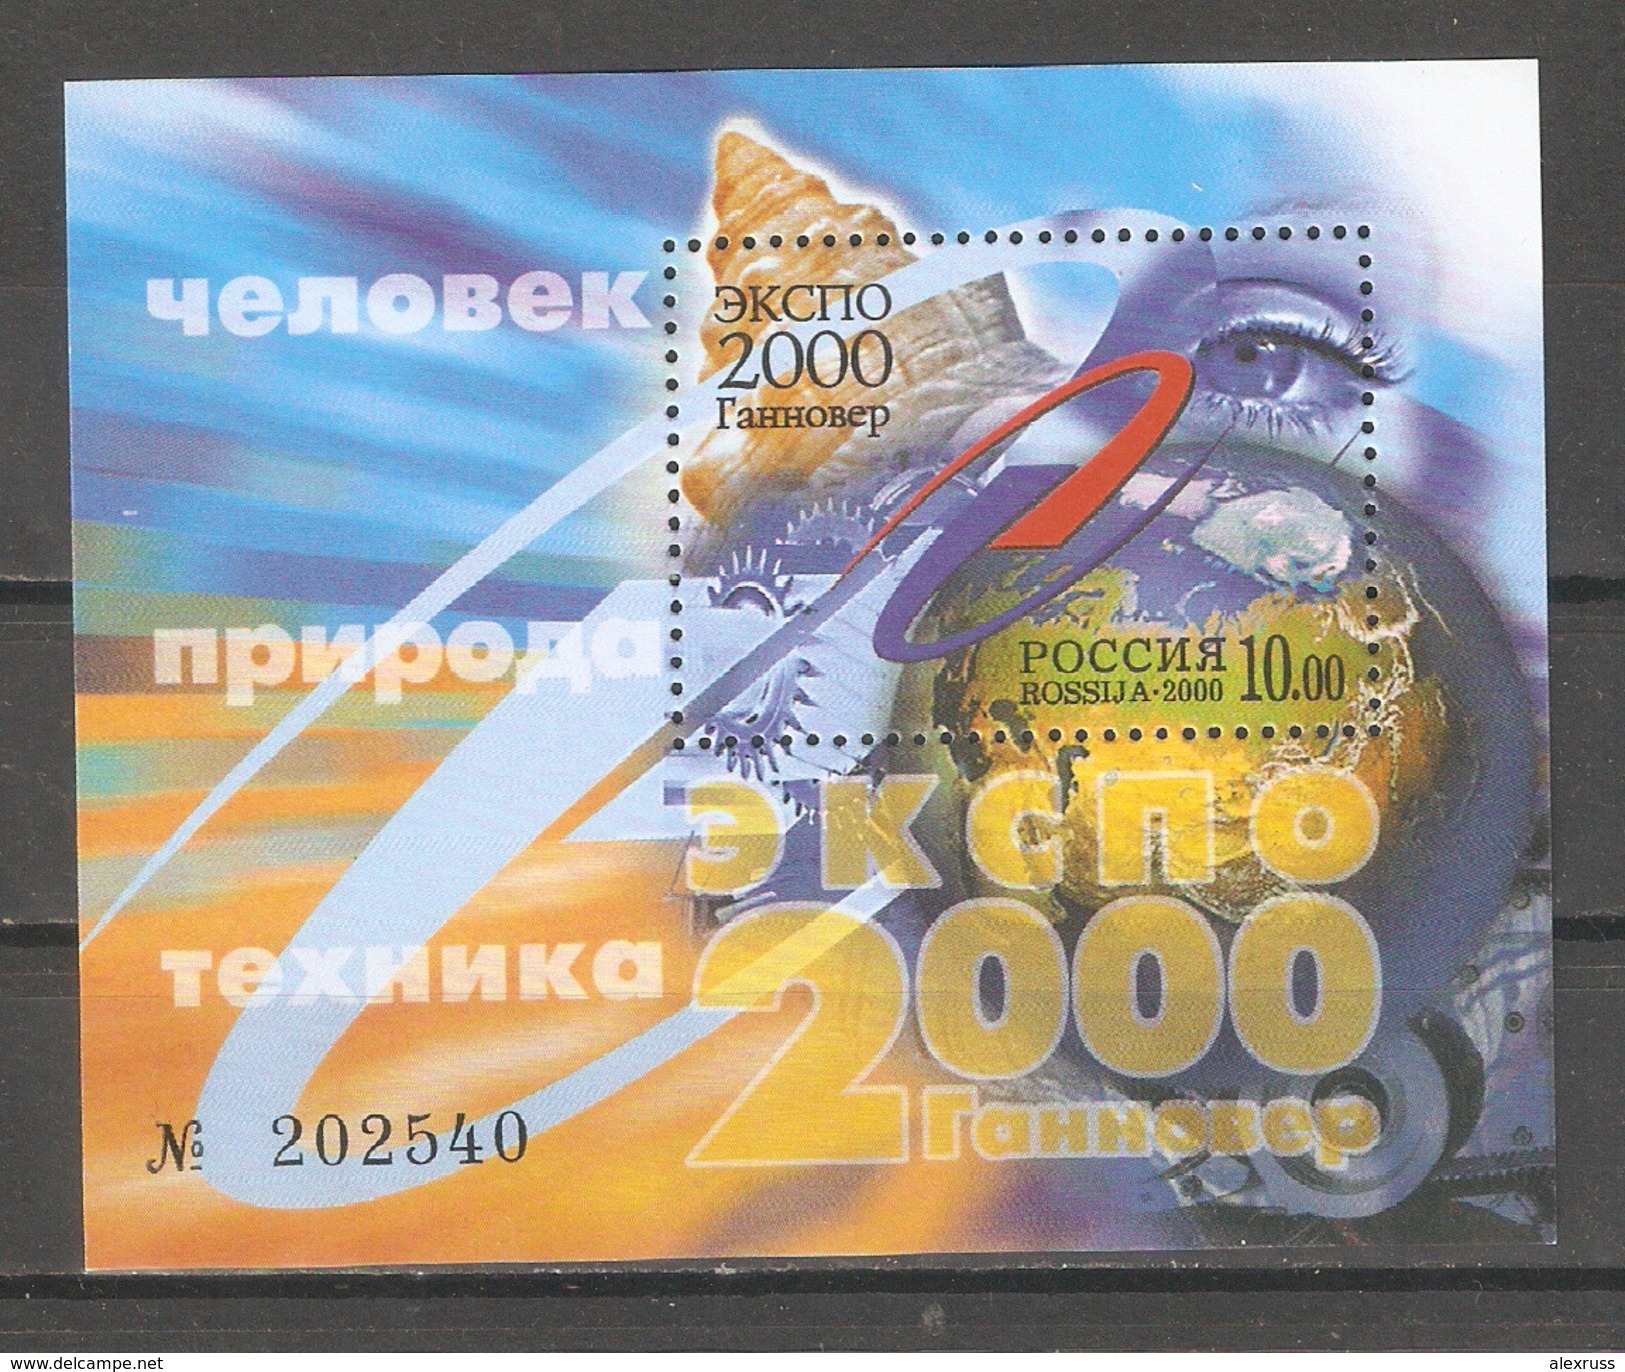 Russia 2000,Souvenir Sheet,EXPO 2000 Hannover,Sc 6590,VF MNH** - 2000 – Hannover (Germania)